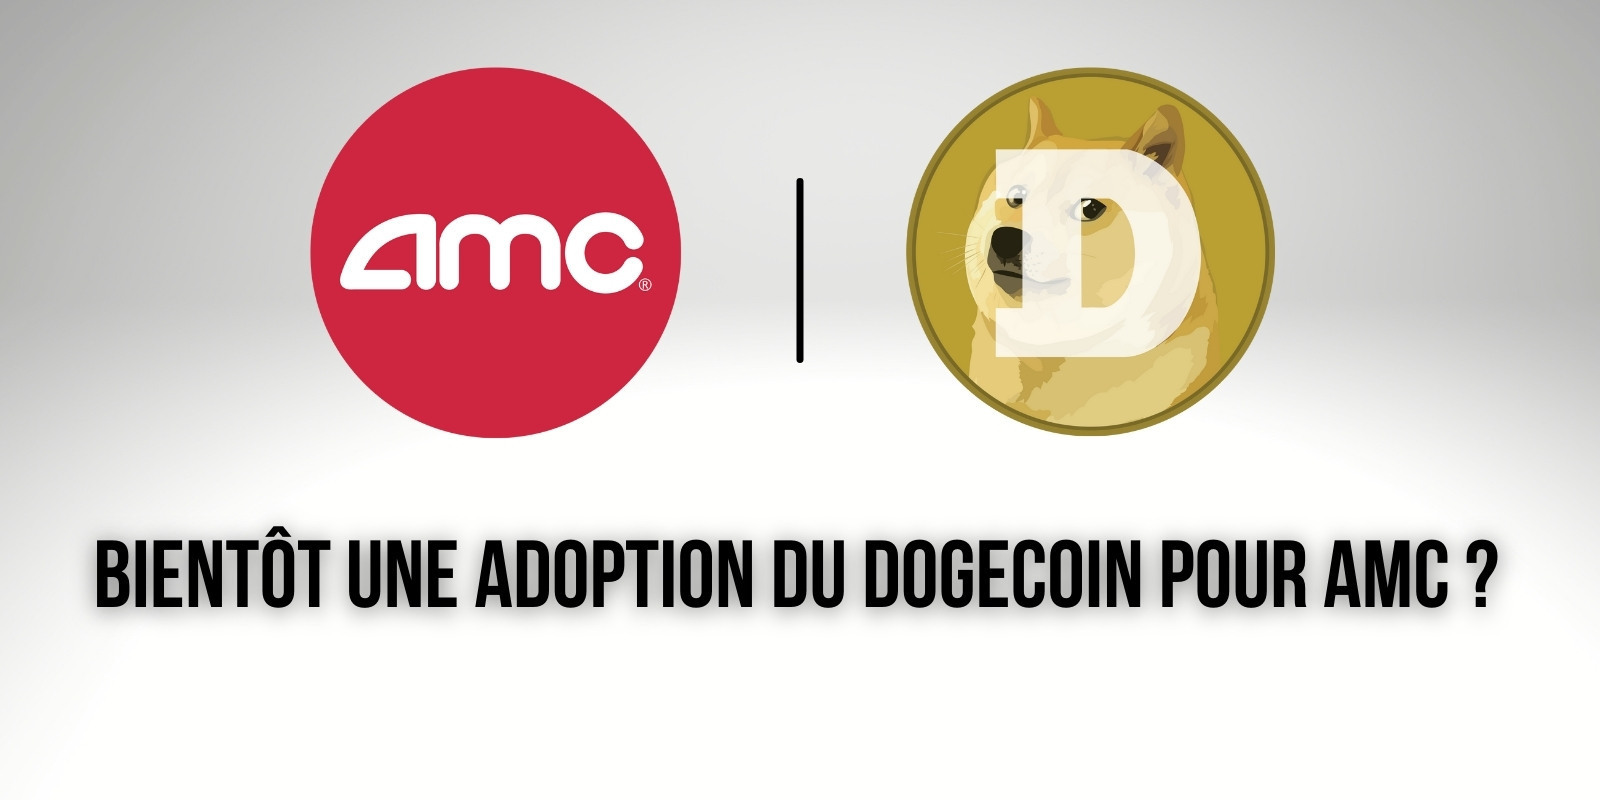 Les cinémas AMC envisageraient d'ajouter le Dogecoin (DOGE) comme moyen de paiement